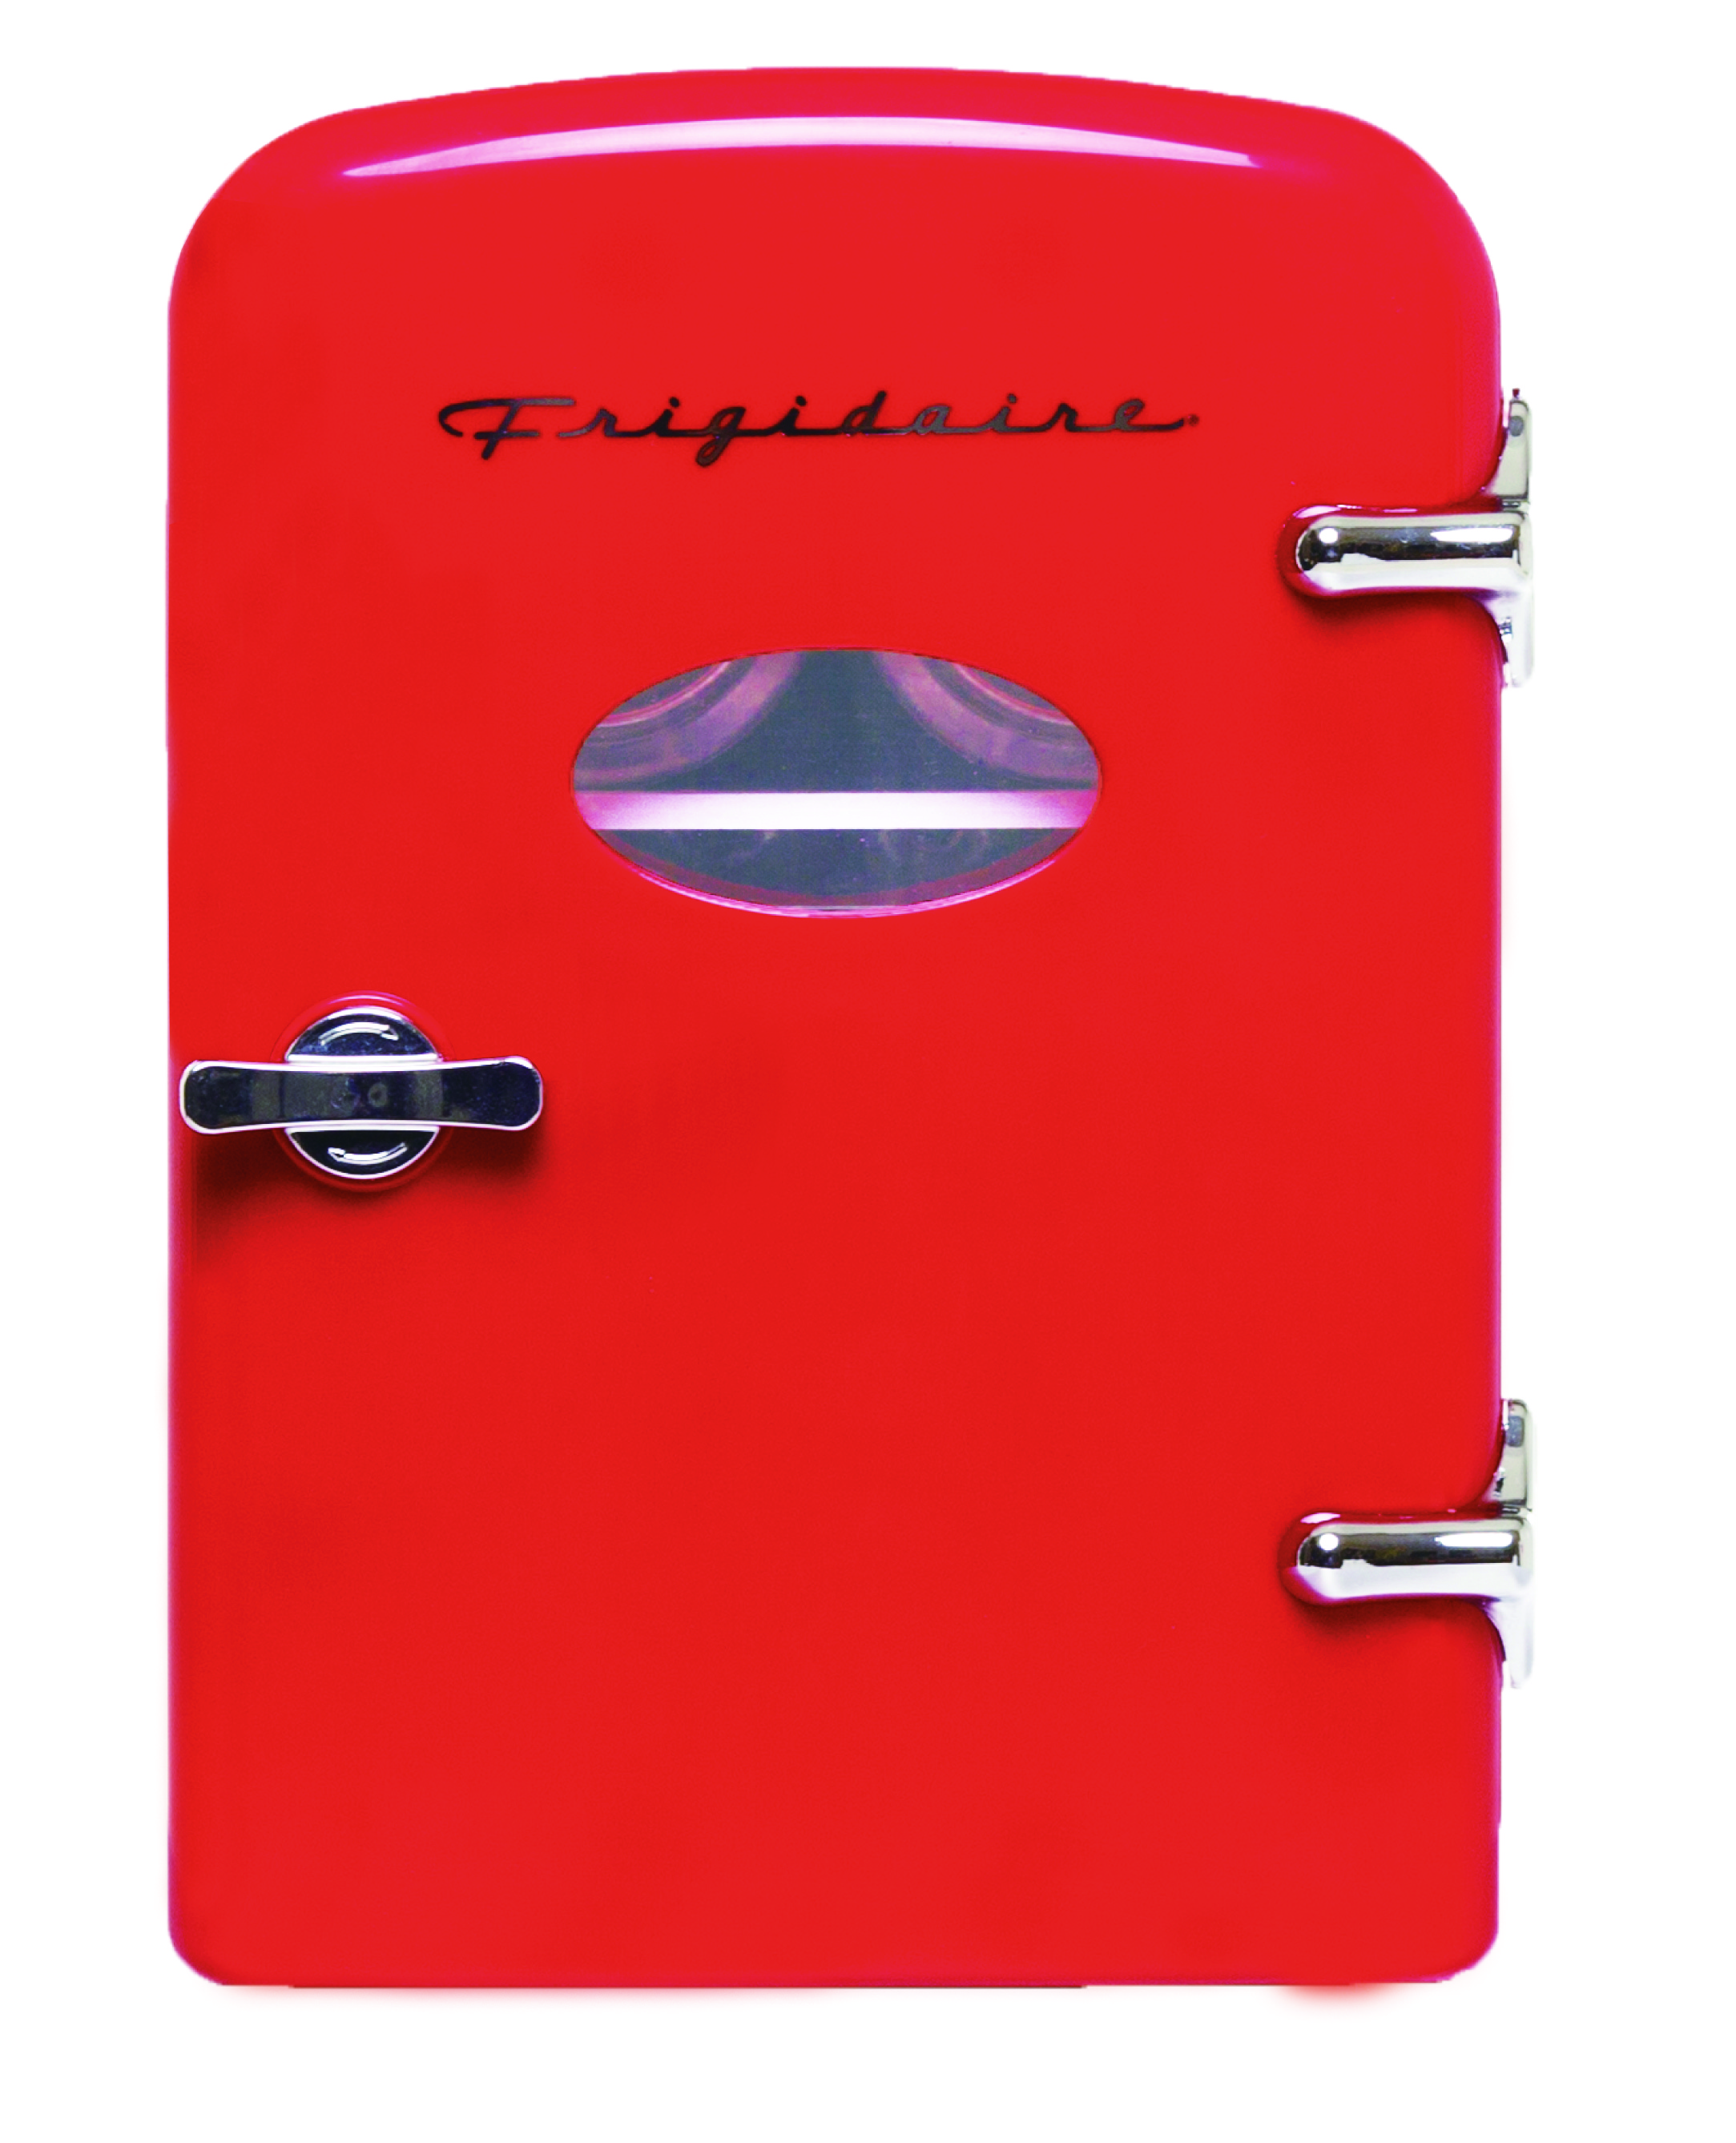 Frigidaire Portable Retro 6-can Mini Fridge EFMIS129, Red - image 8 of 11